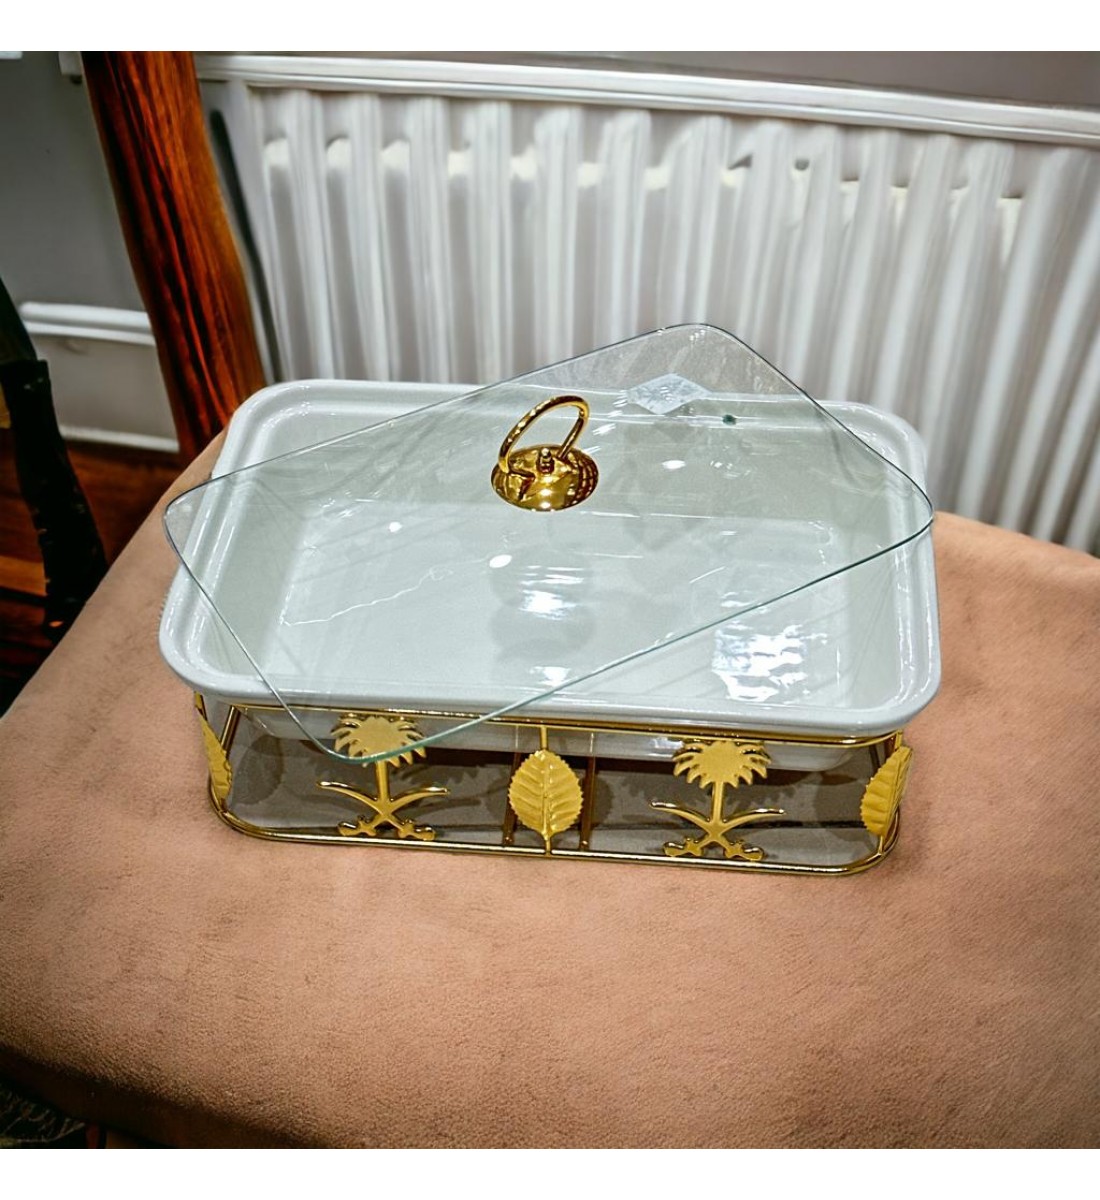  سخان بوفية صحن تقديم سيراميك لتسخين الطعام مزود بغطاء بتصميم فريد ممي10×22×43سم 